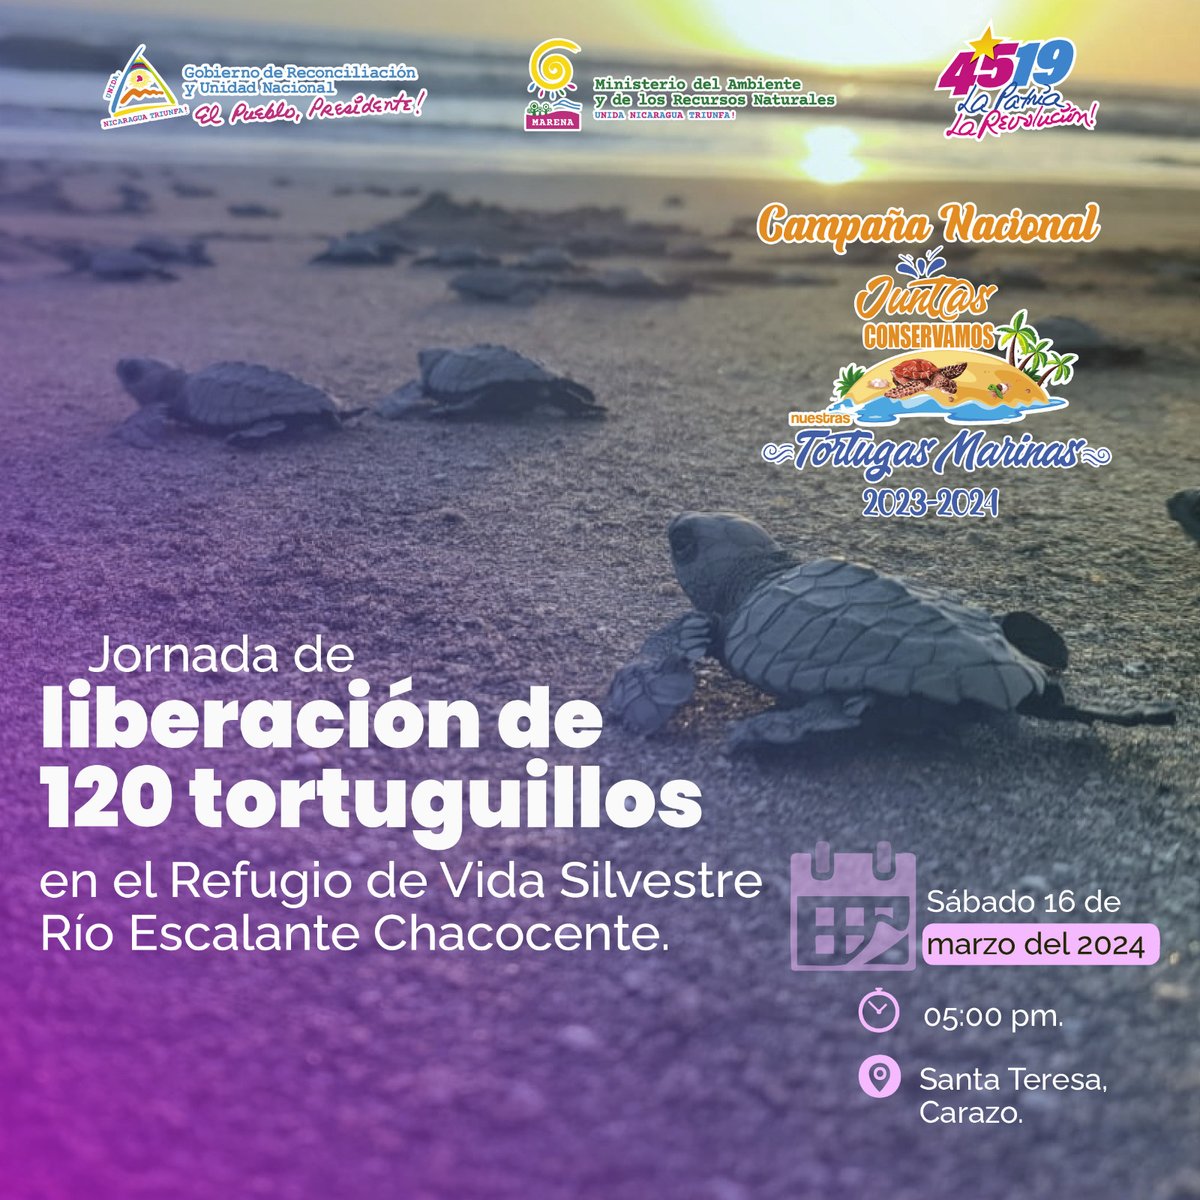 Para los apasionados de la naturaleza, les informamos que este fin de semana tendremos la liberación de 120 tortuguillos de la especie Paslama, en Chacocente. #TortugasMarinas #Nicaragua #MARENA #AmorAlaMadreTierra #Biodiversidad